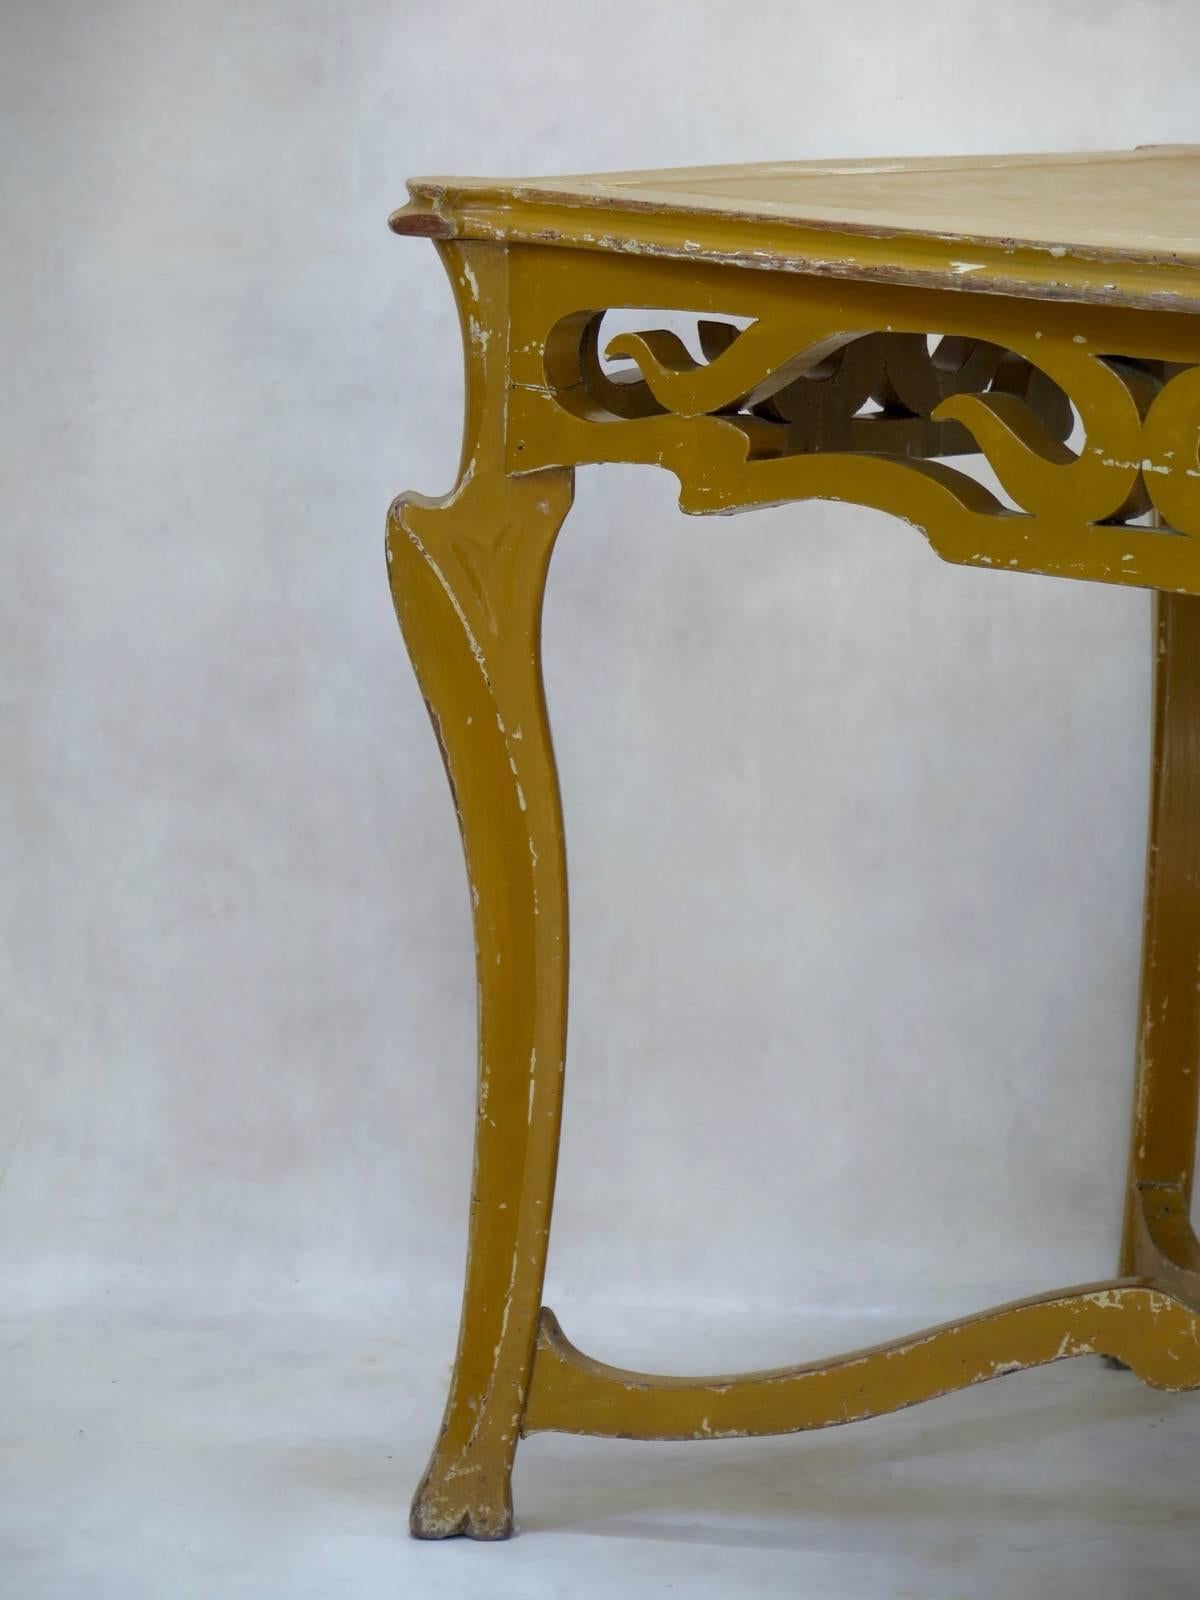 Französischer Jugendstiltisch aus geschnitztem Holz mit einer harzartigen Platte. Original senfgelbe Farbe. Der Tisch hat die angenehmen, fließenden Linien, die für diesen Stil charakteristisch sind, aber auch eine schöne Stämmigkeit, die ihn so